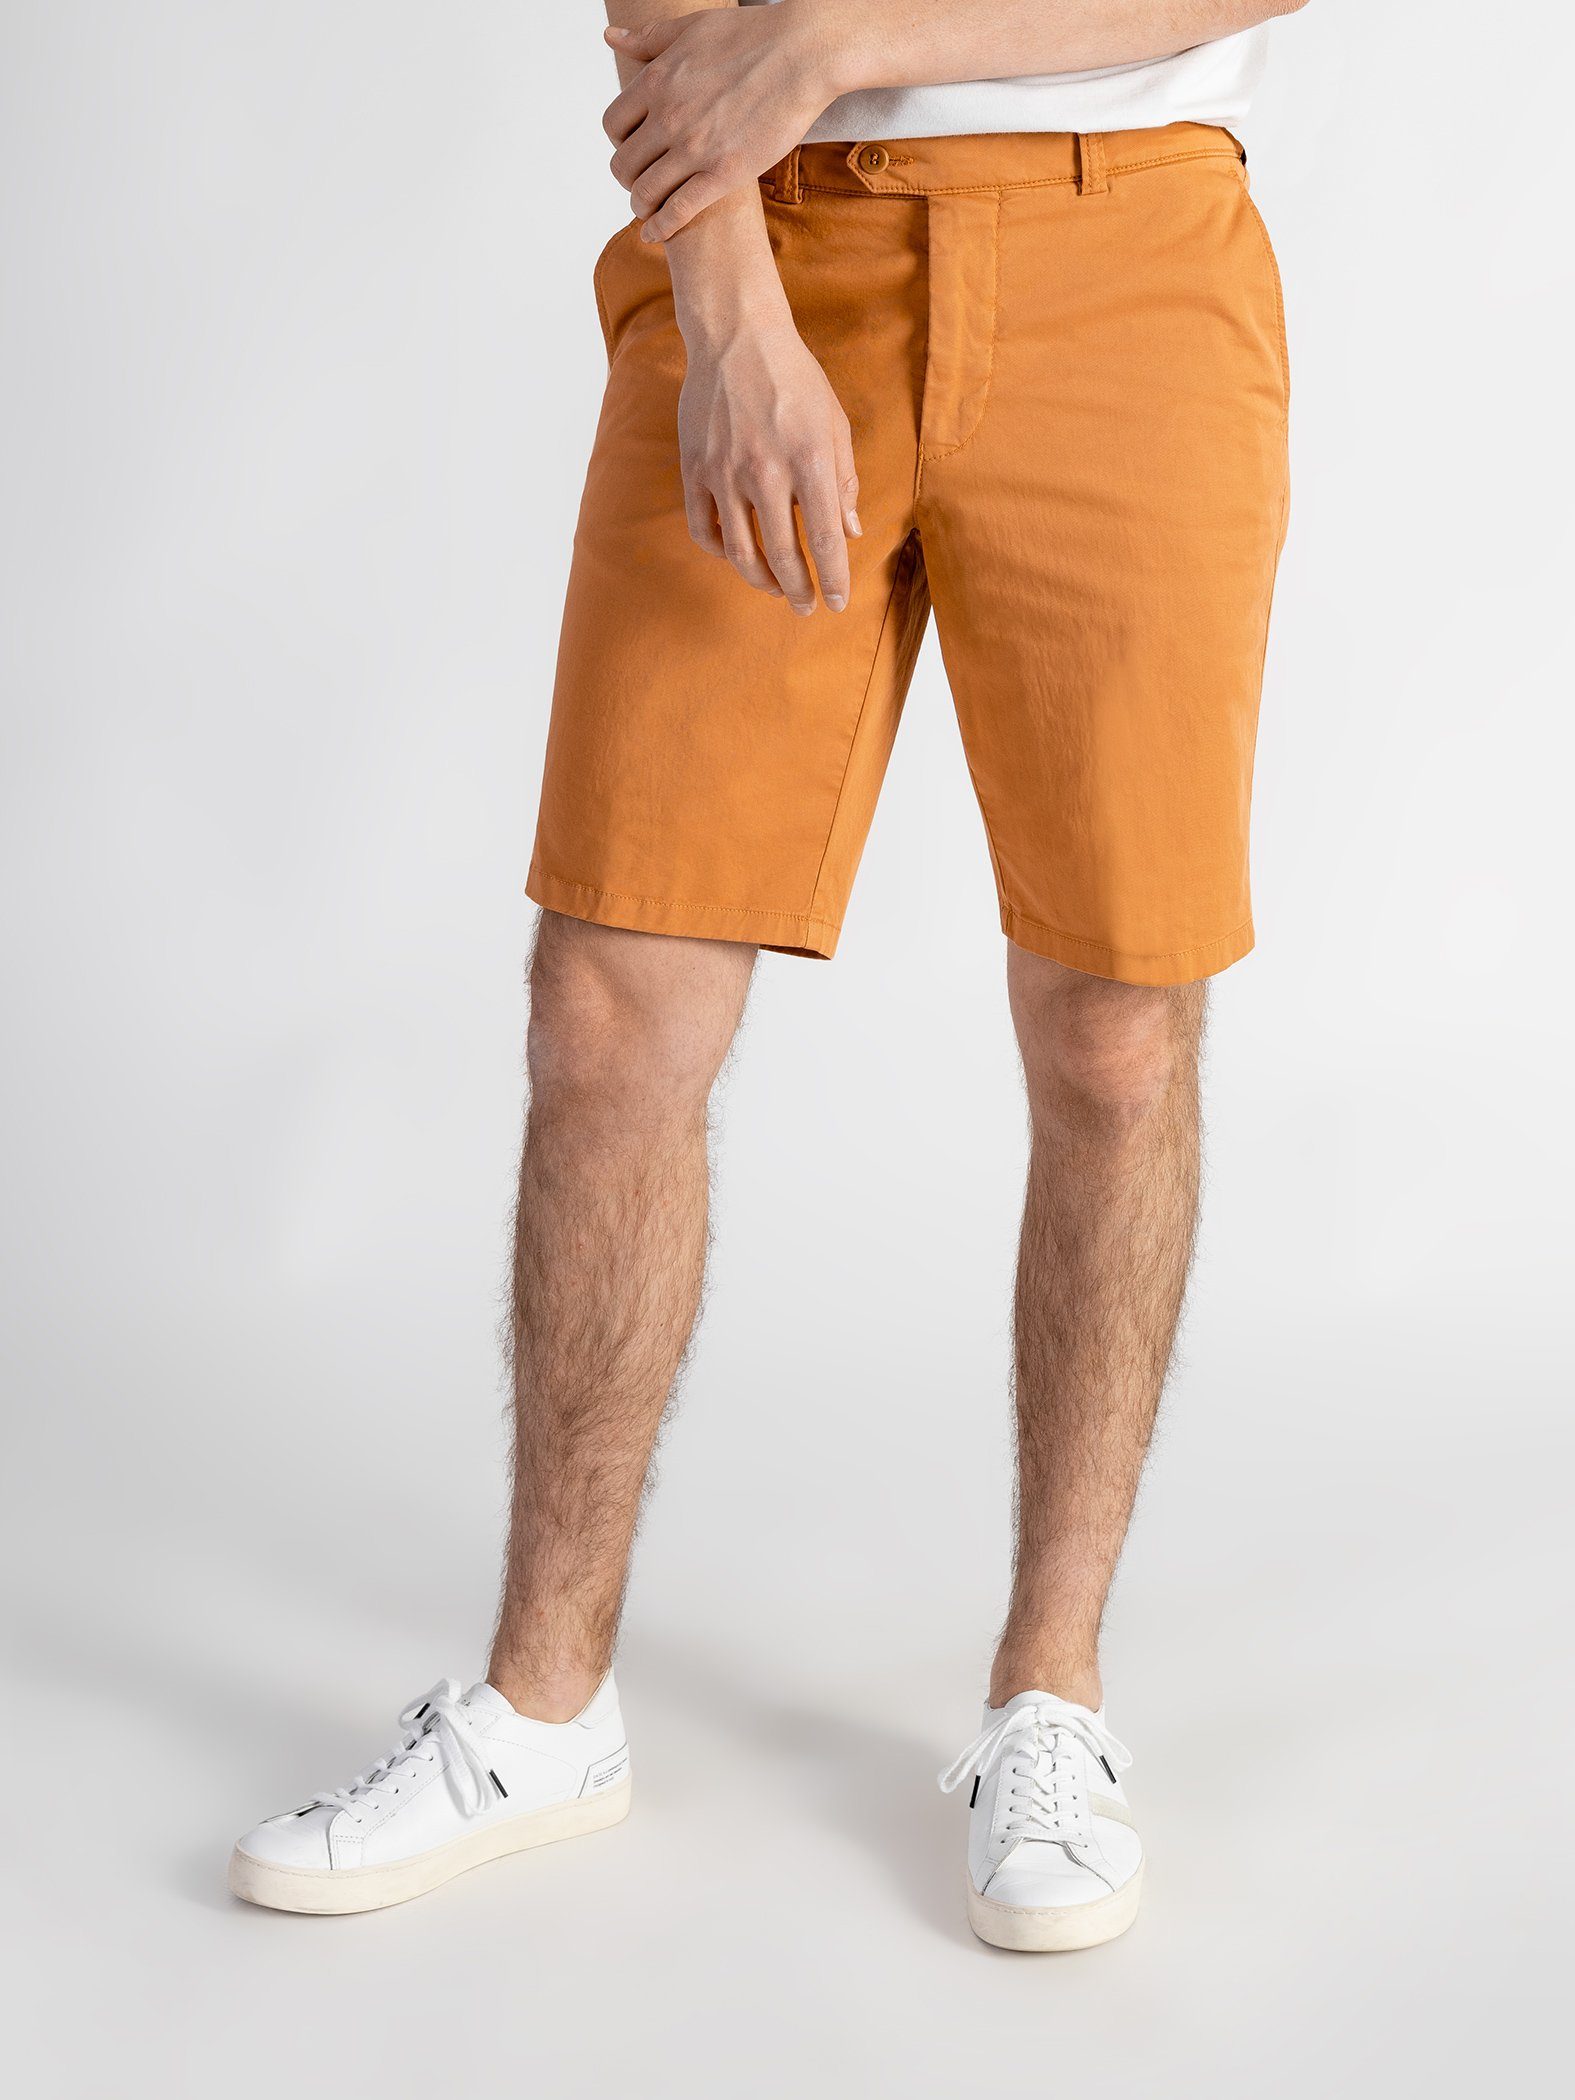 Berühmte Luxusmarke TwoMates Shorts Shorts mit elastischem GOTS-zertifiziert Orange Bund, Farbauswahl